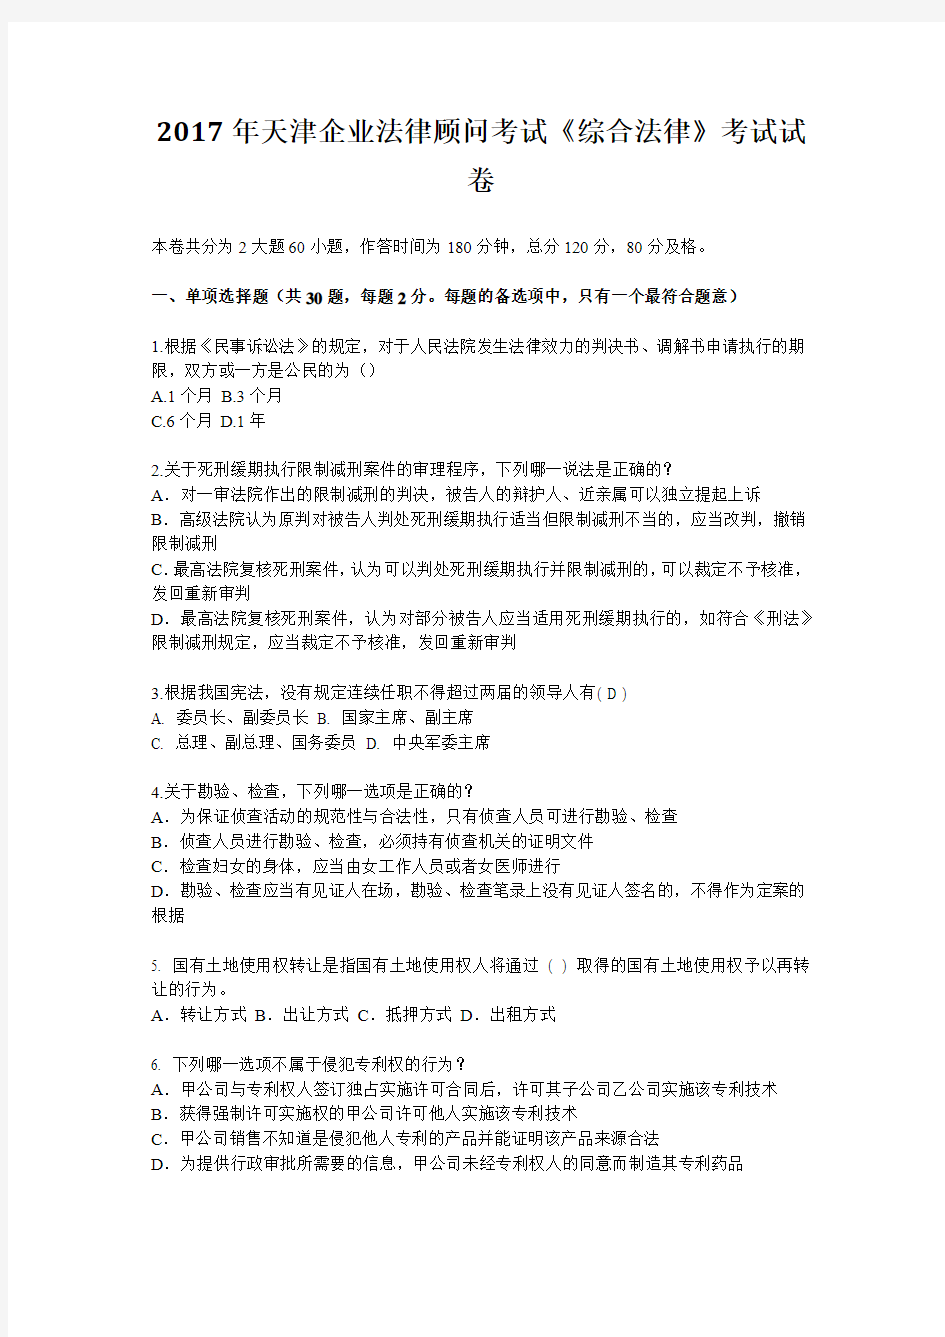 2017年天津企业法律顾问考试《综合法律》考试试卷